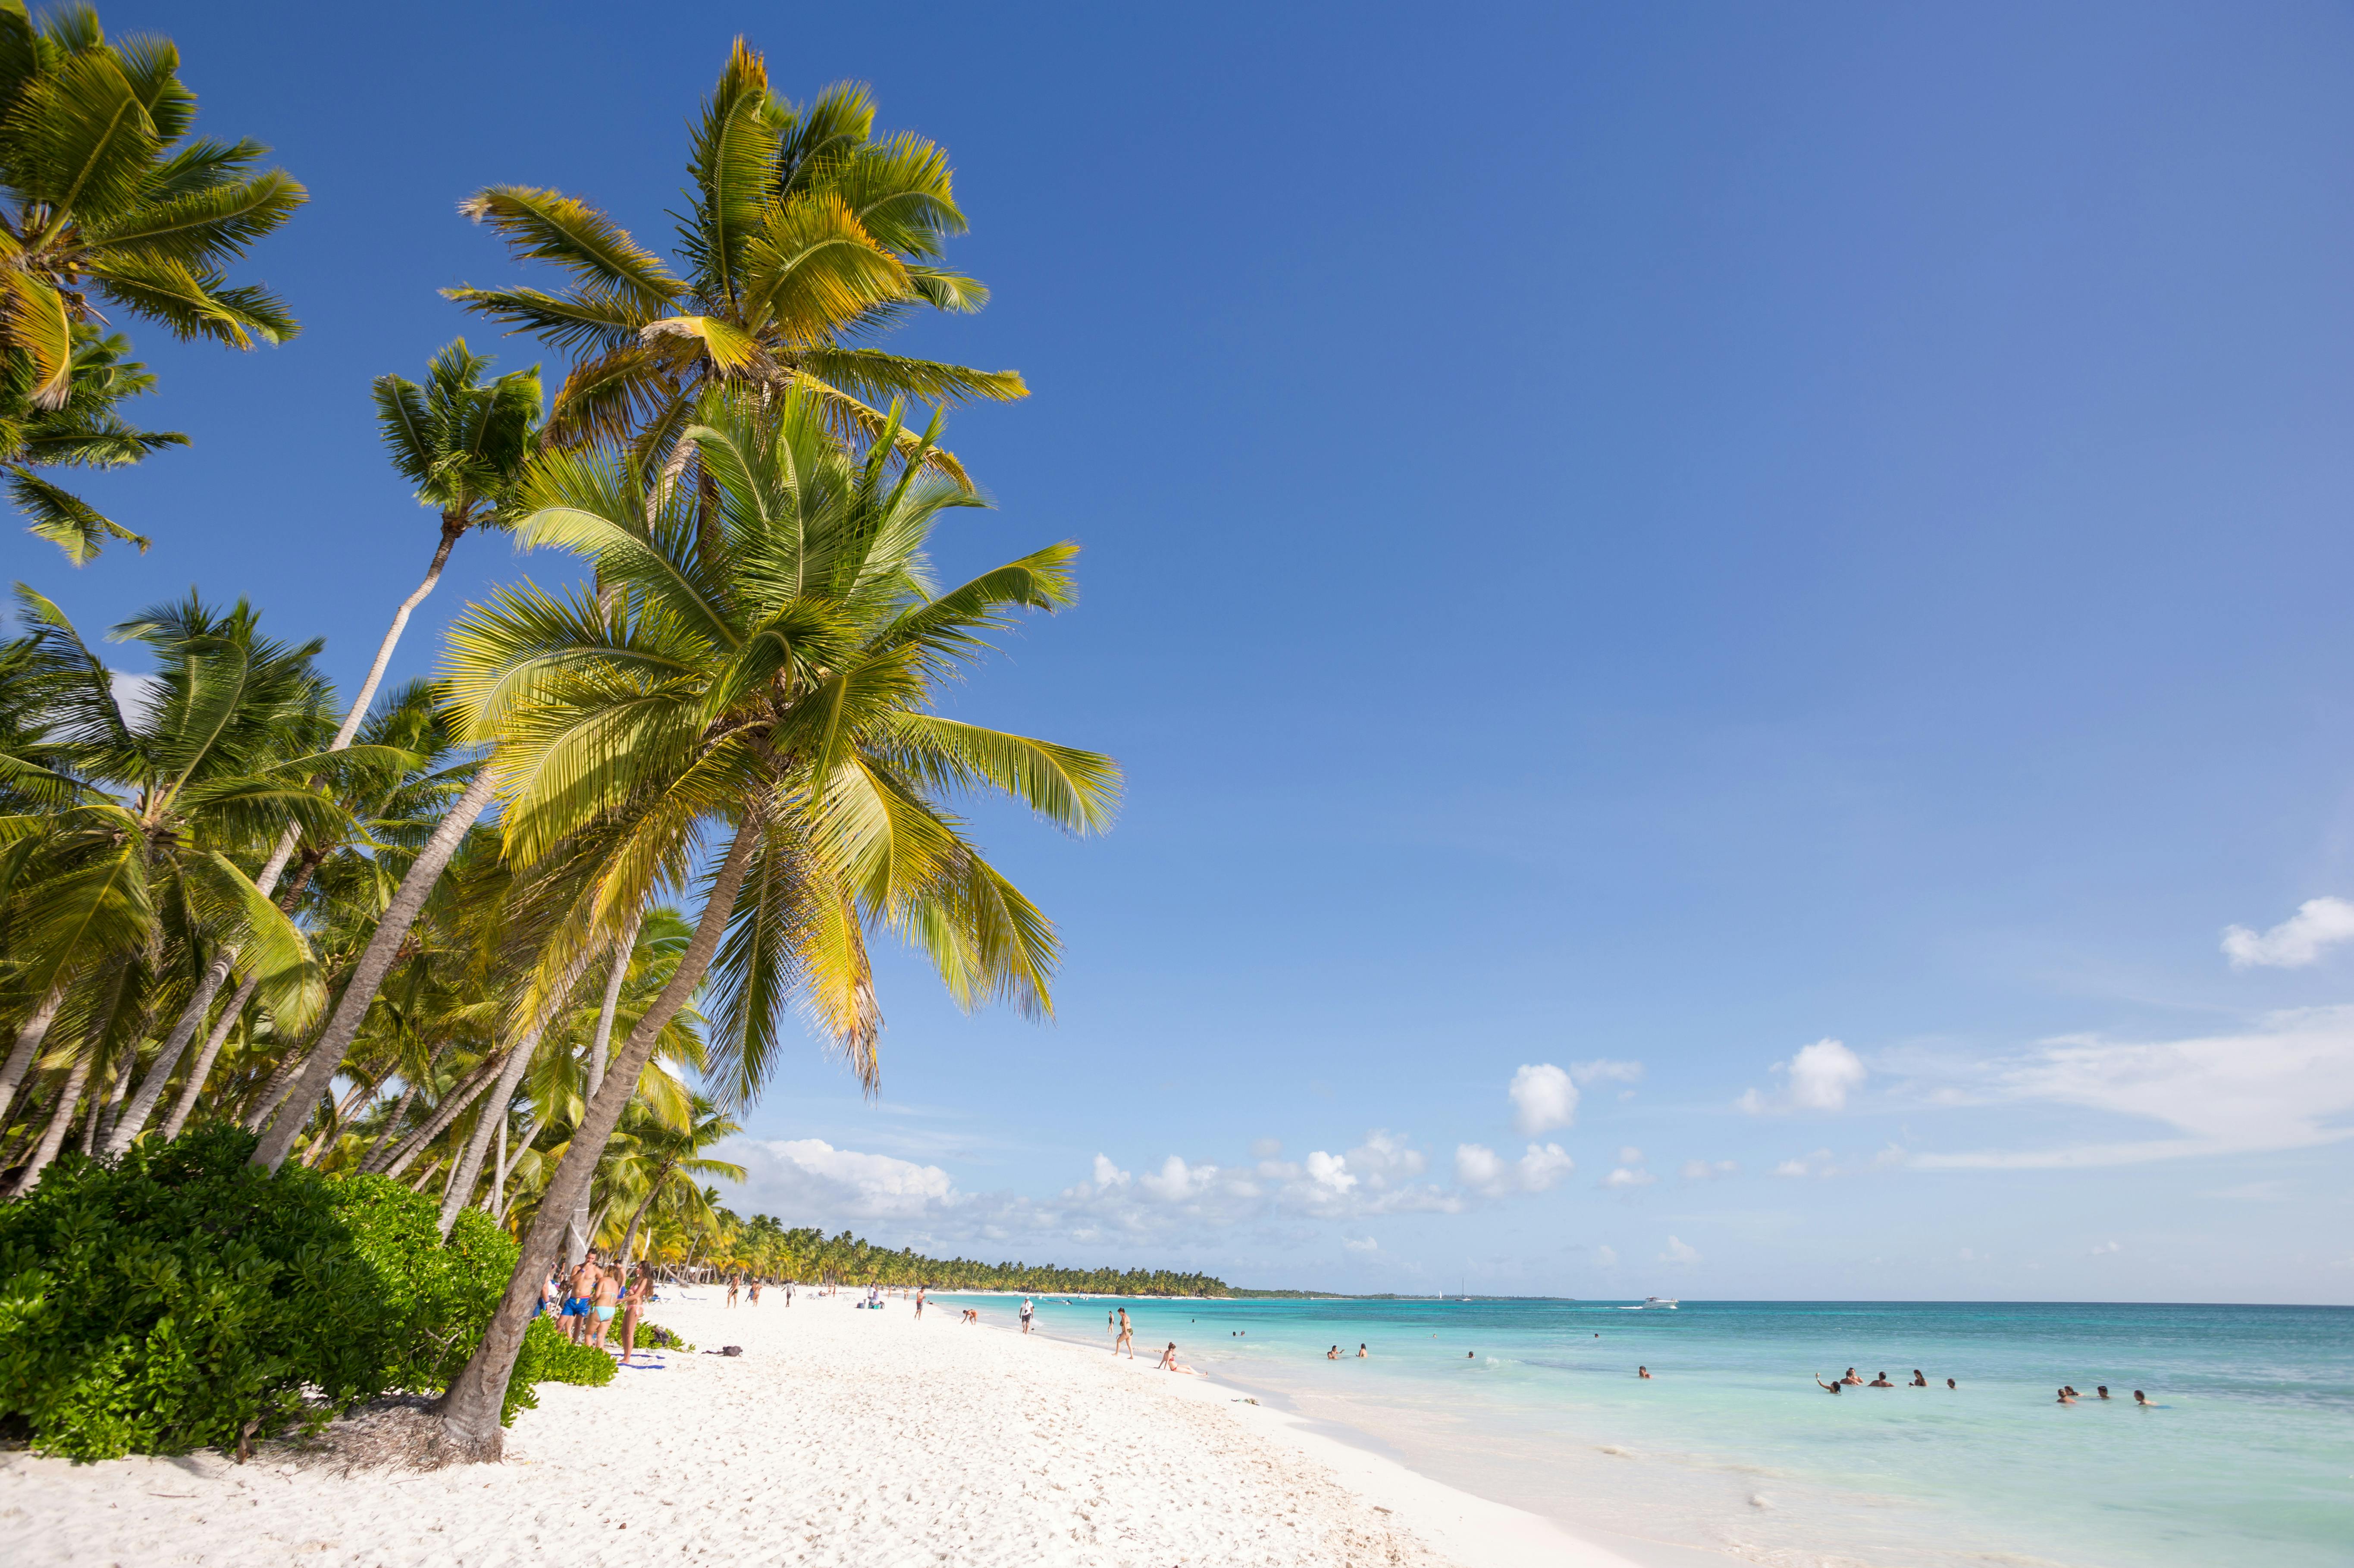 A sandy beach landscape in punta cana, dominican republic